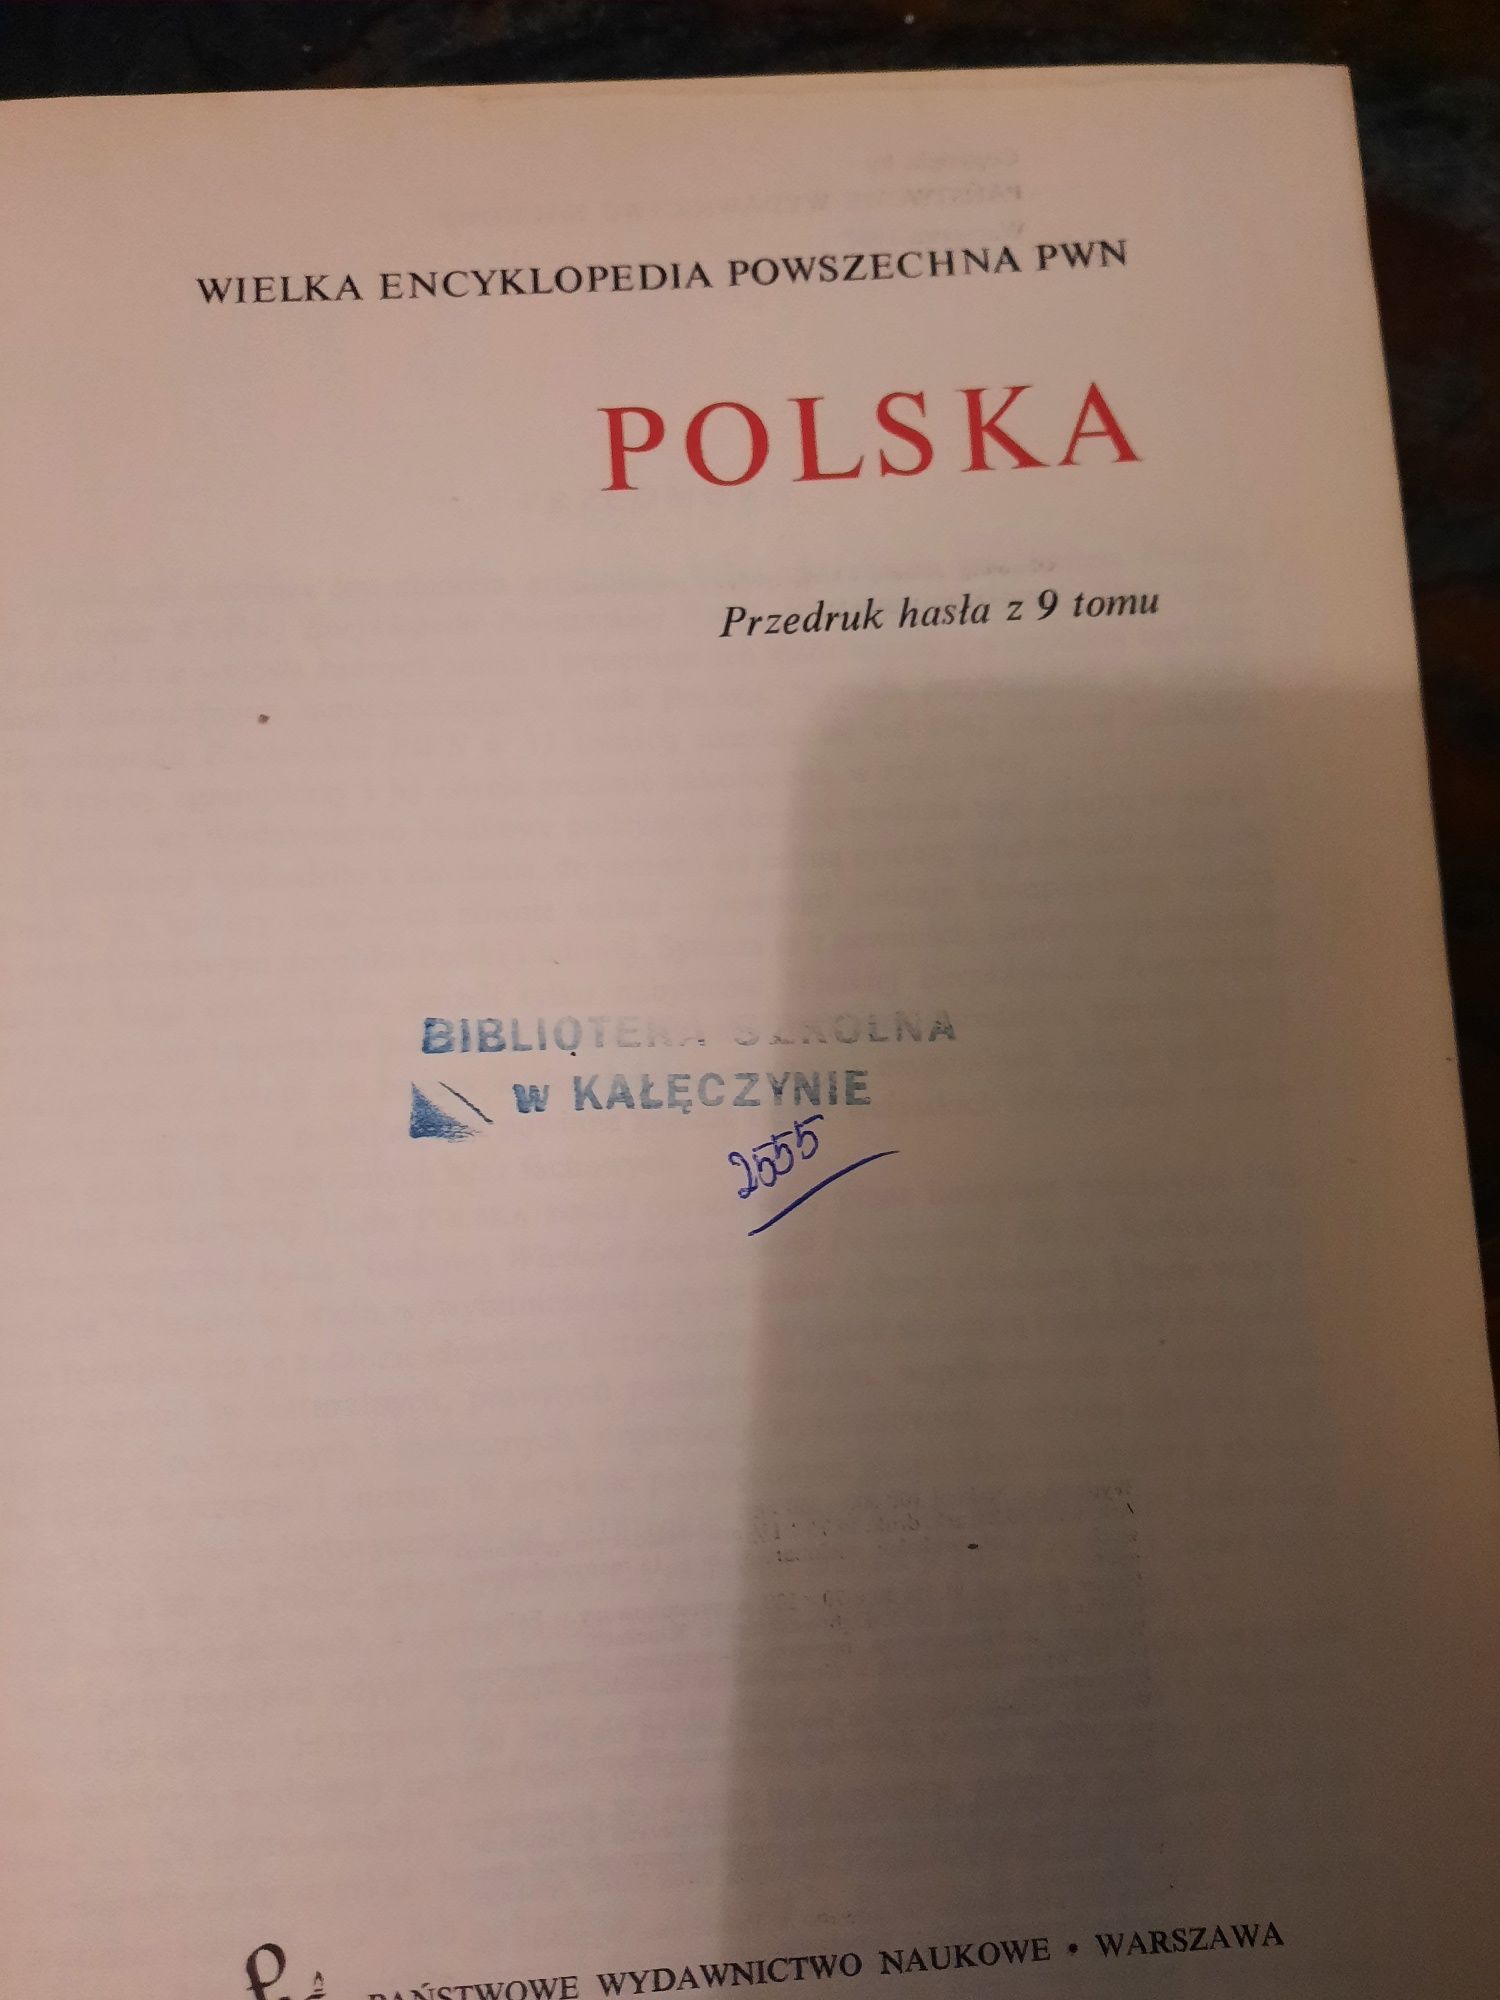 POLSKA - wielka encyklopedia powszechna PWN.  1967